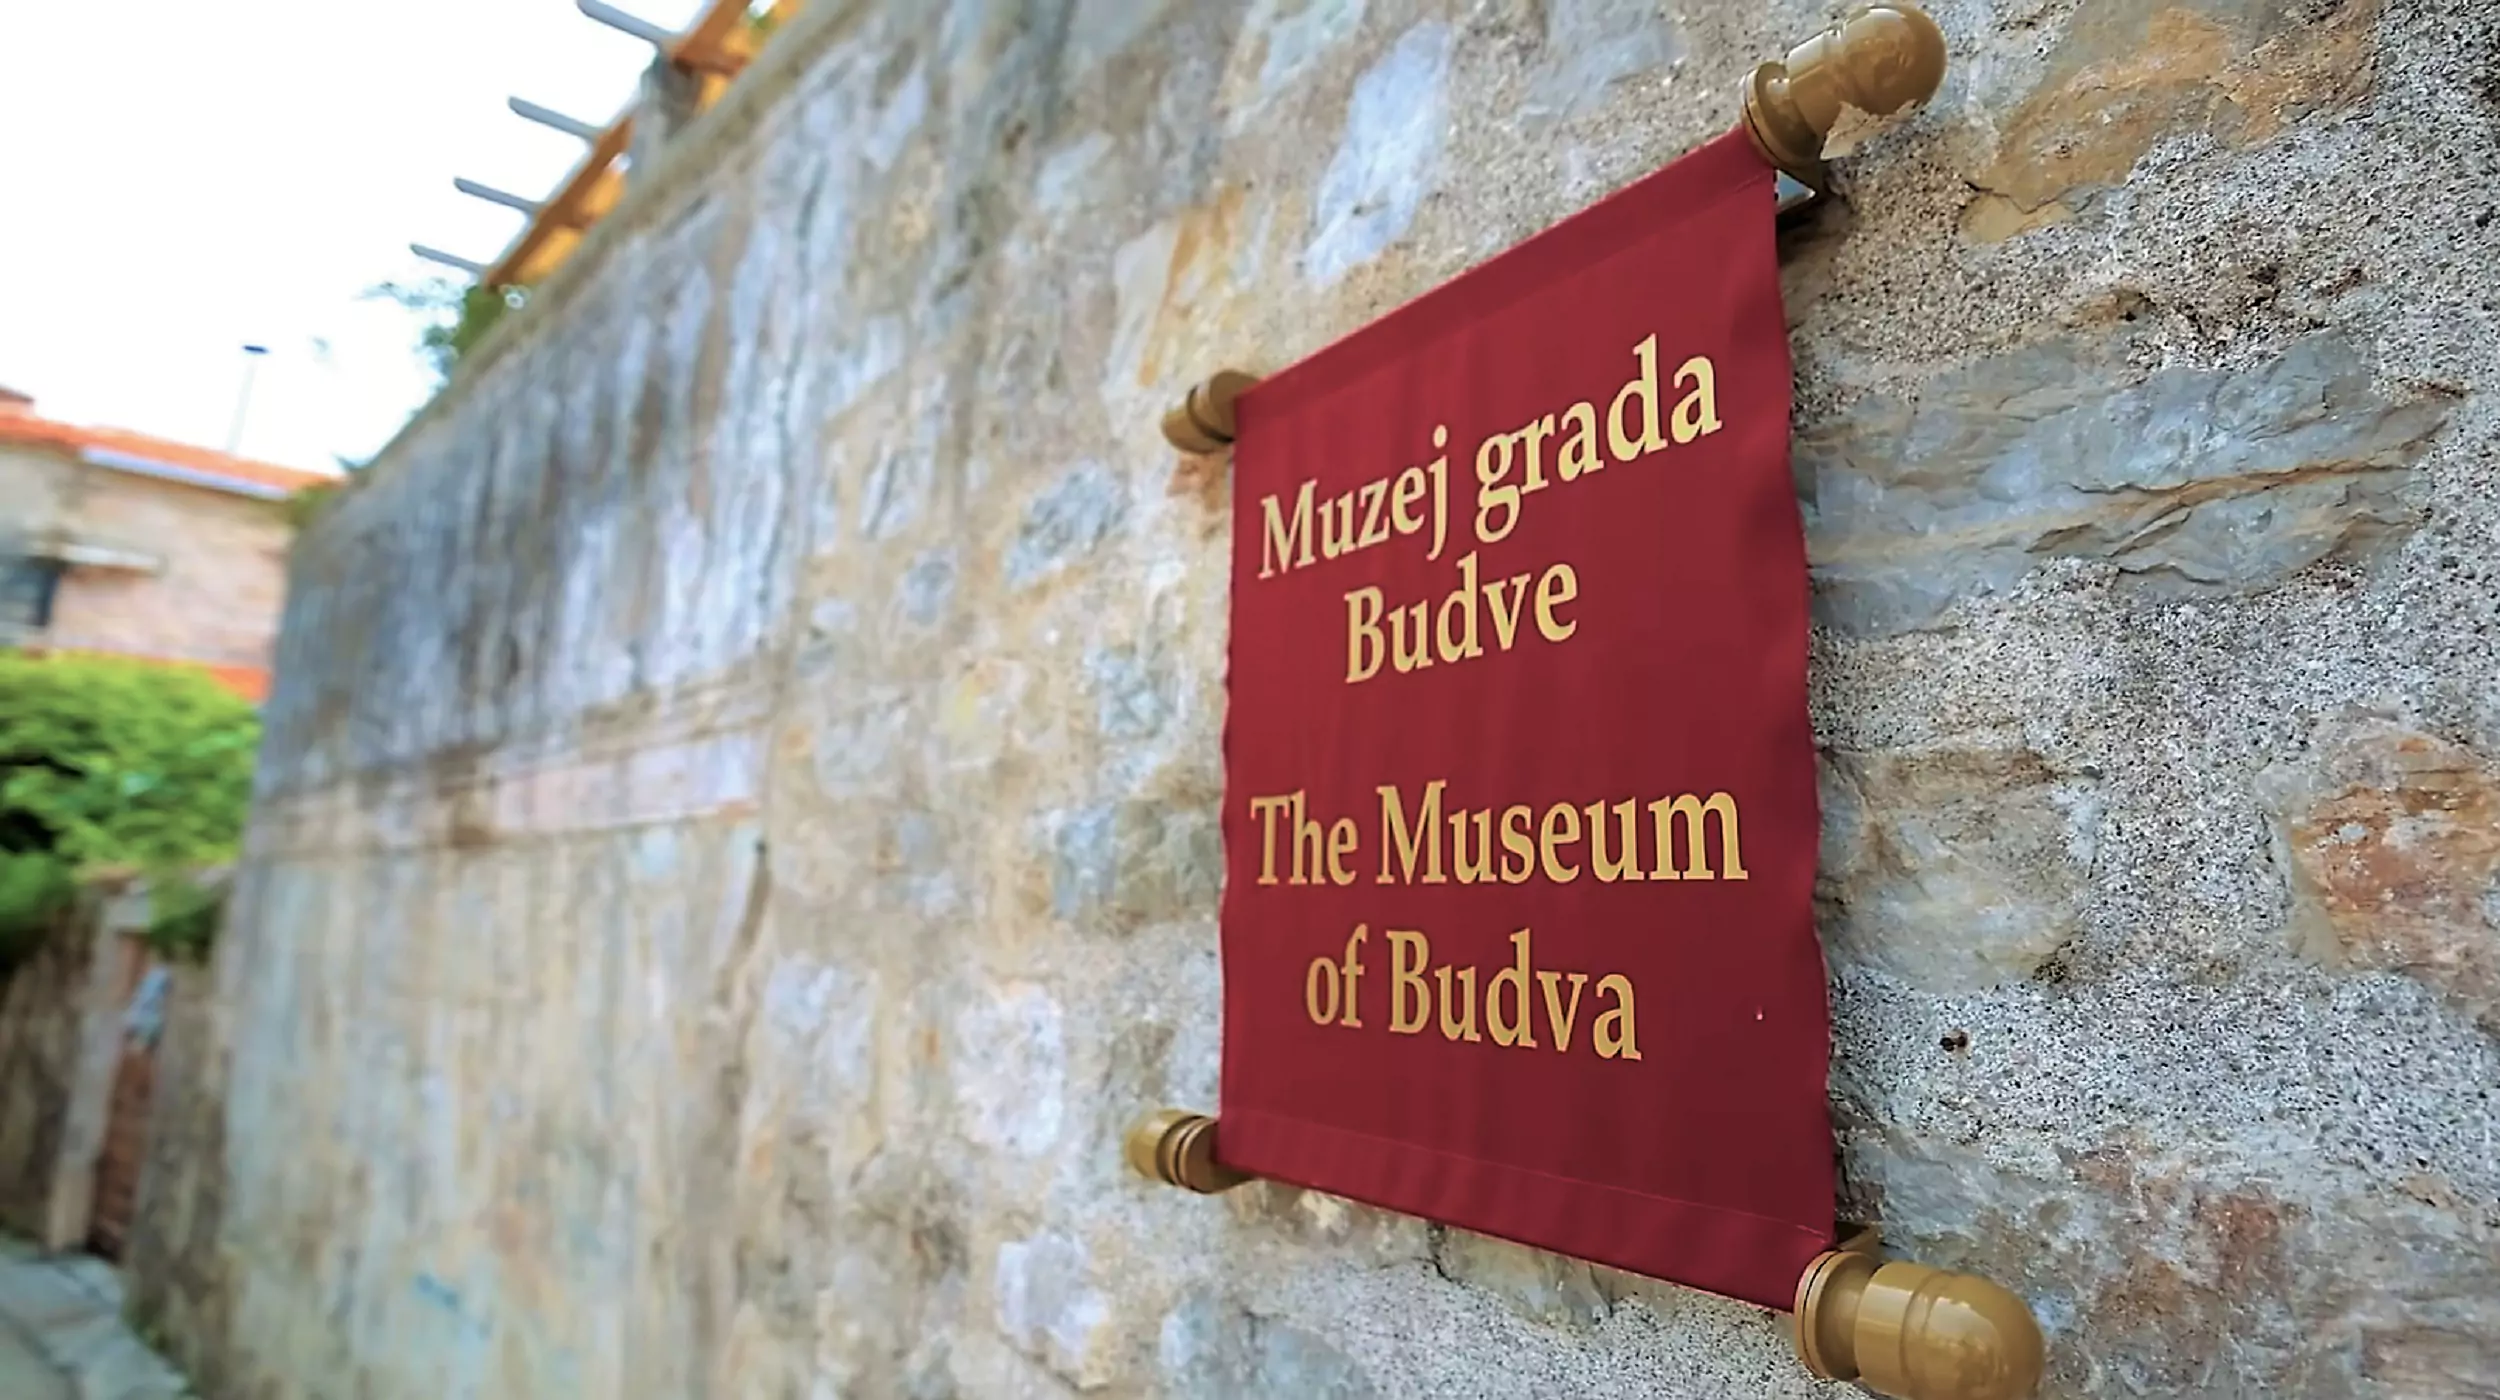 Arheoloska nalazista Budva Crna Gora